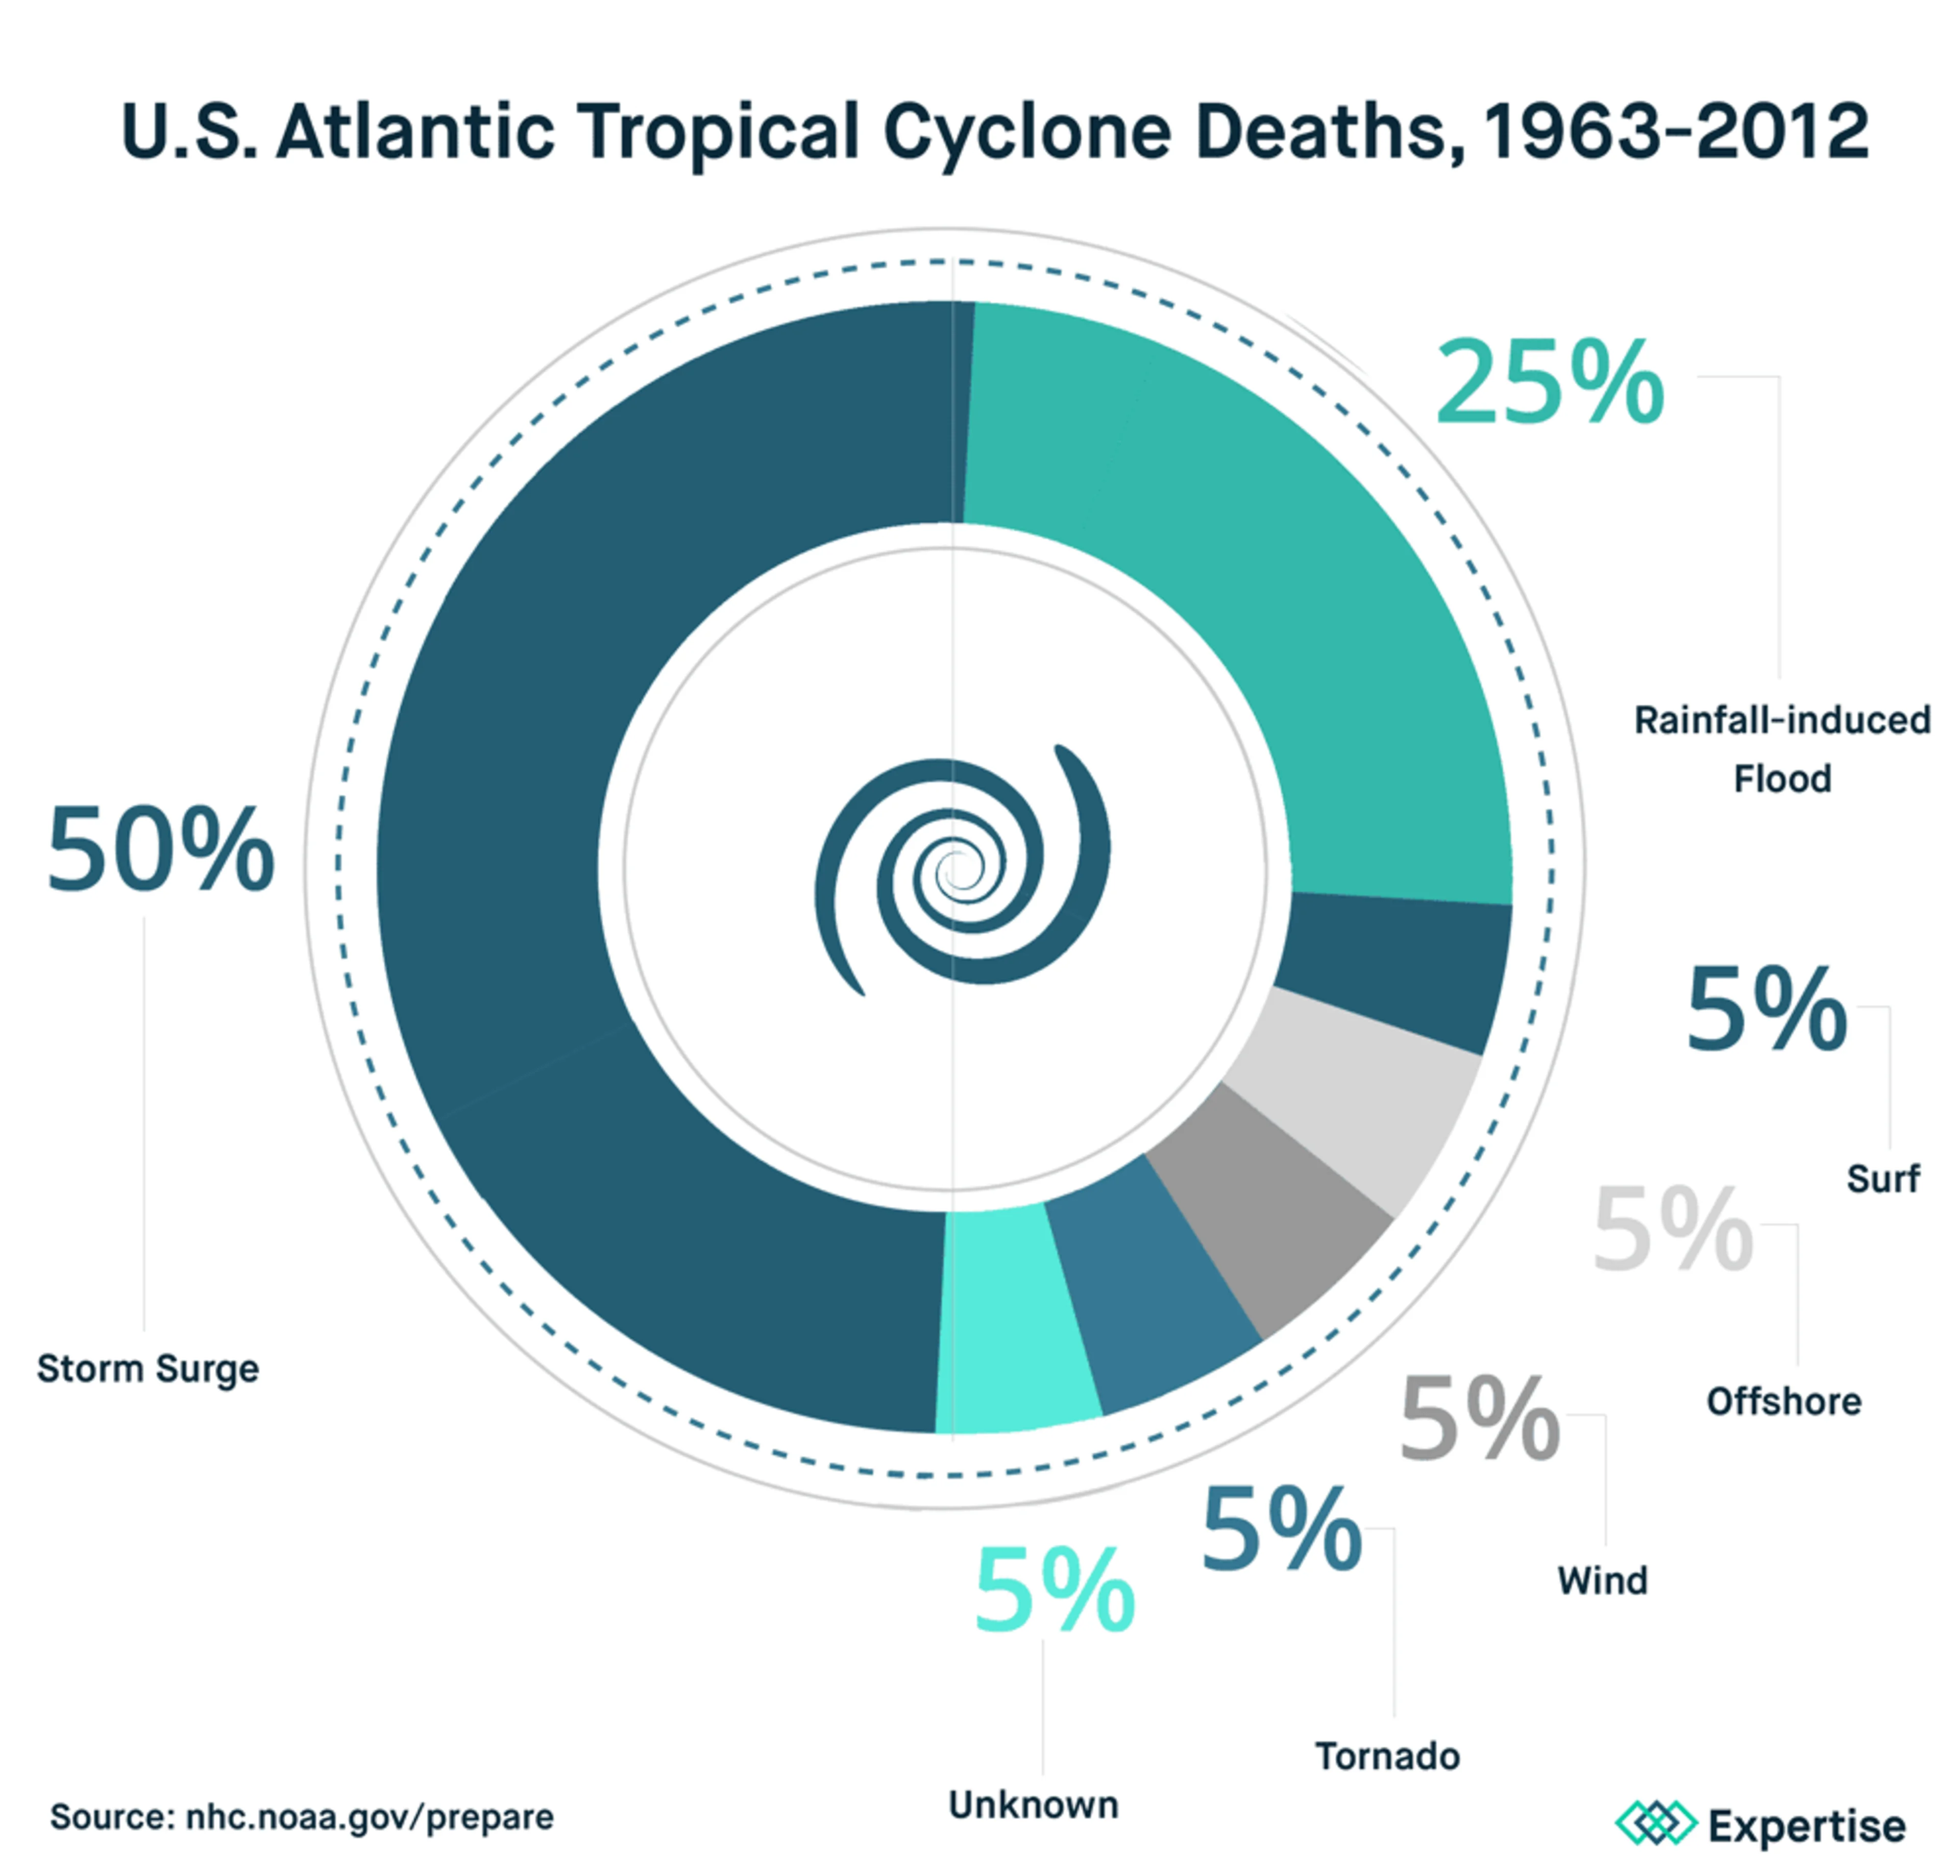 Cyclone Deaths